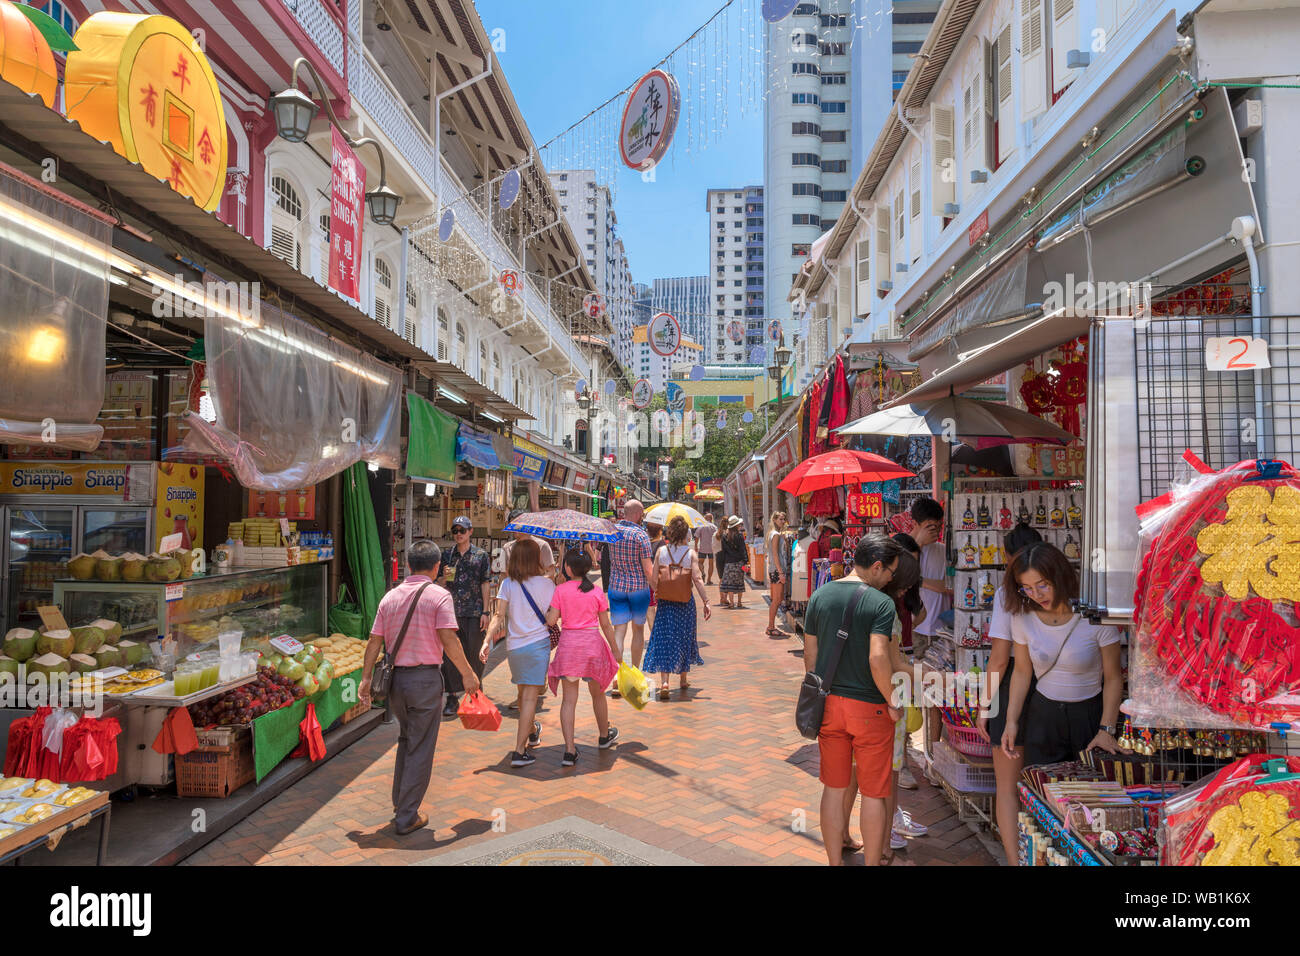 Geschäfte und Restaurants in Chinatown, Singapore City, Singapur Stockfoto